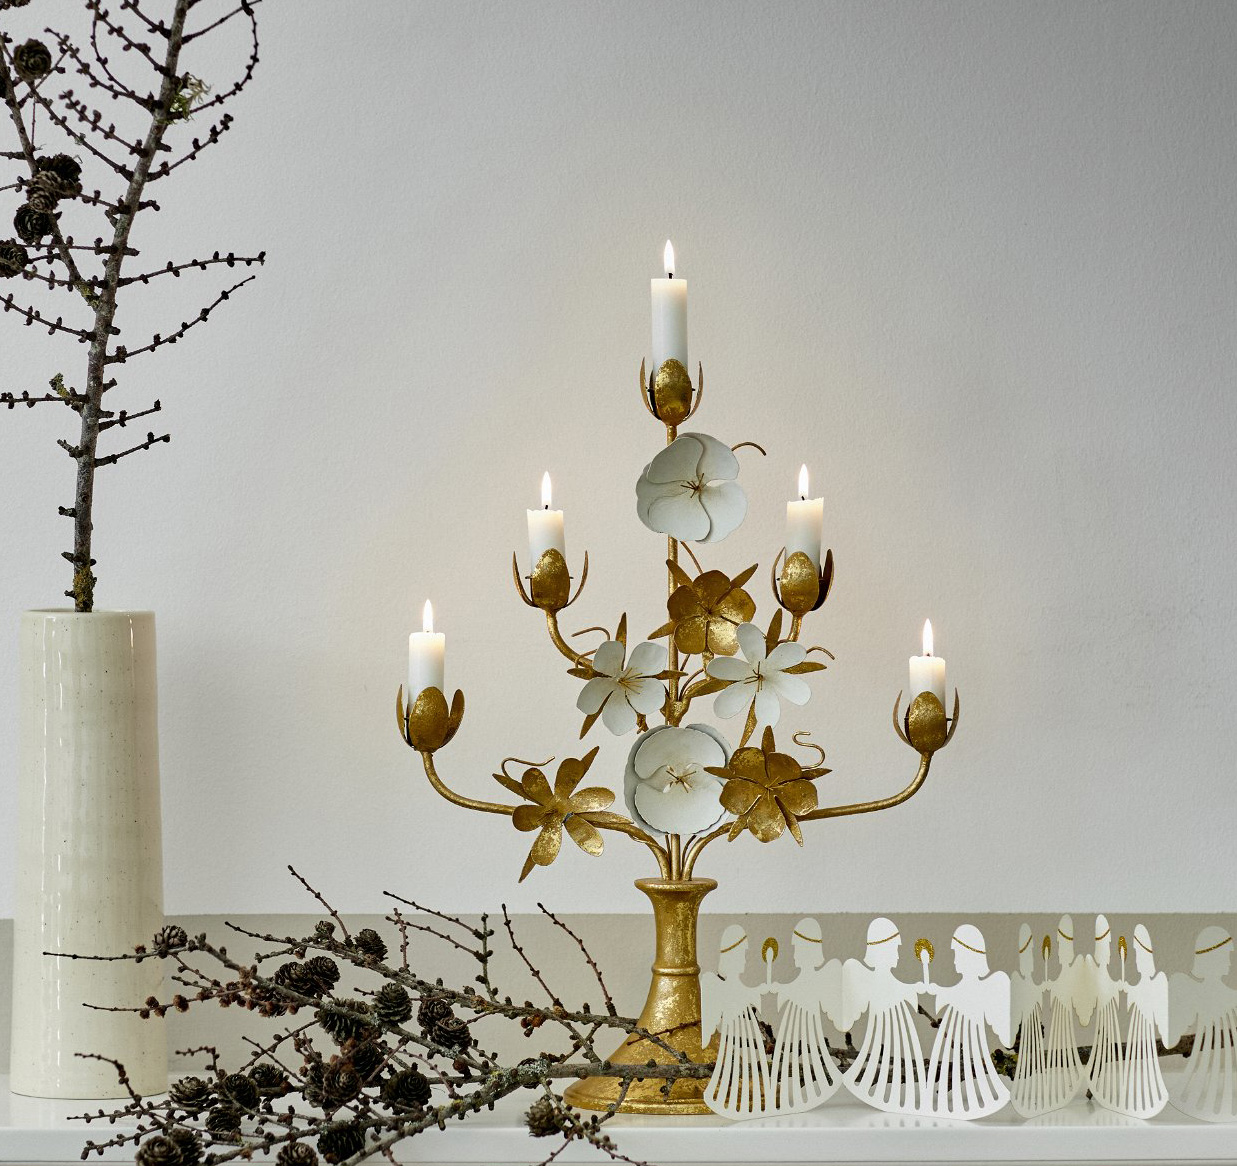 Bungalow Kerzenleuchter/Kandelaber Gold FLORA von Bungalow, Höhe ca. 47 cm, Candelabra Flora Golden